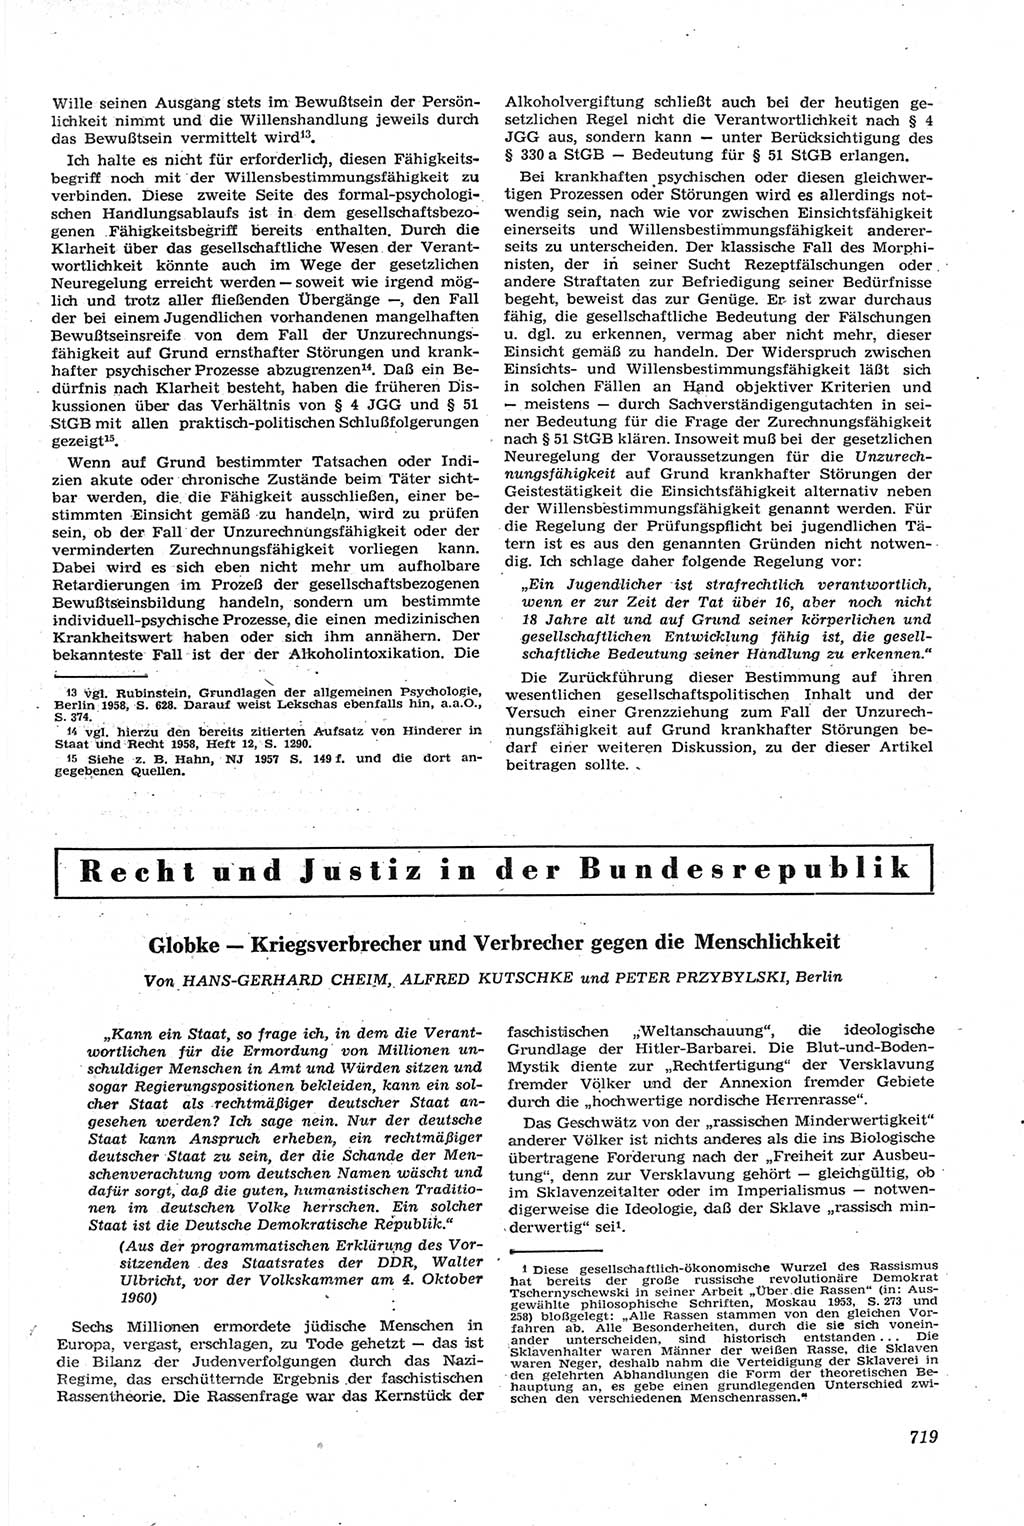 Neue Justiz (NJ), Zeitschrift für Recht und Rechtswissenschaft [Deutsche Demokratische Republik (DDR)], 14. Jahrgang 1960, Seite 719 (NJ DDR 1960, S. 719)